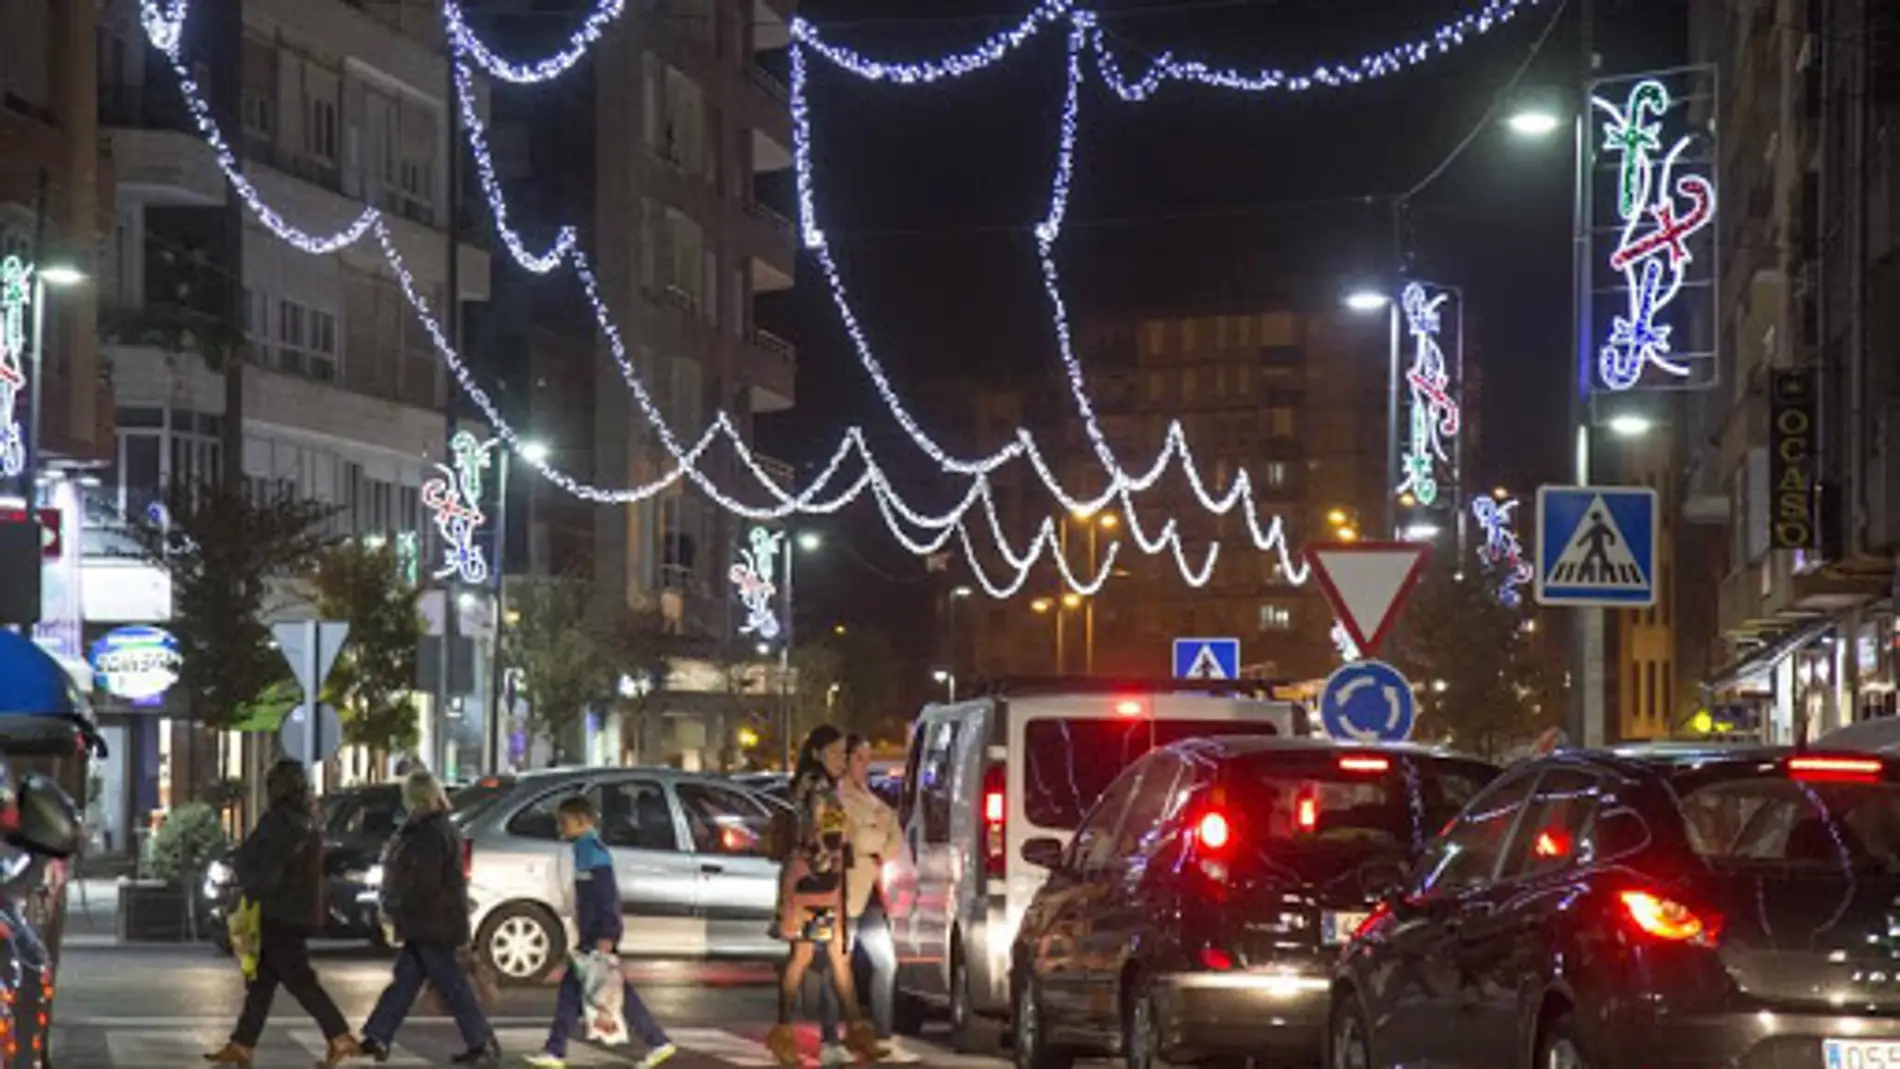 Encendido luces de navidad Cantabria 2020: cuándo es, horario y ubicación